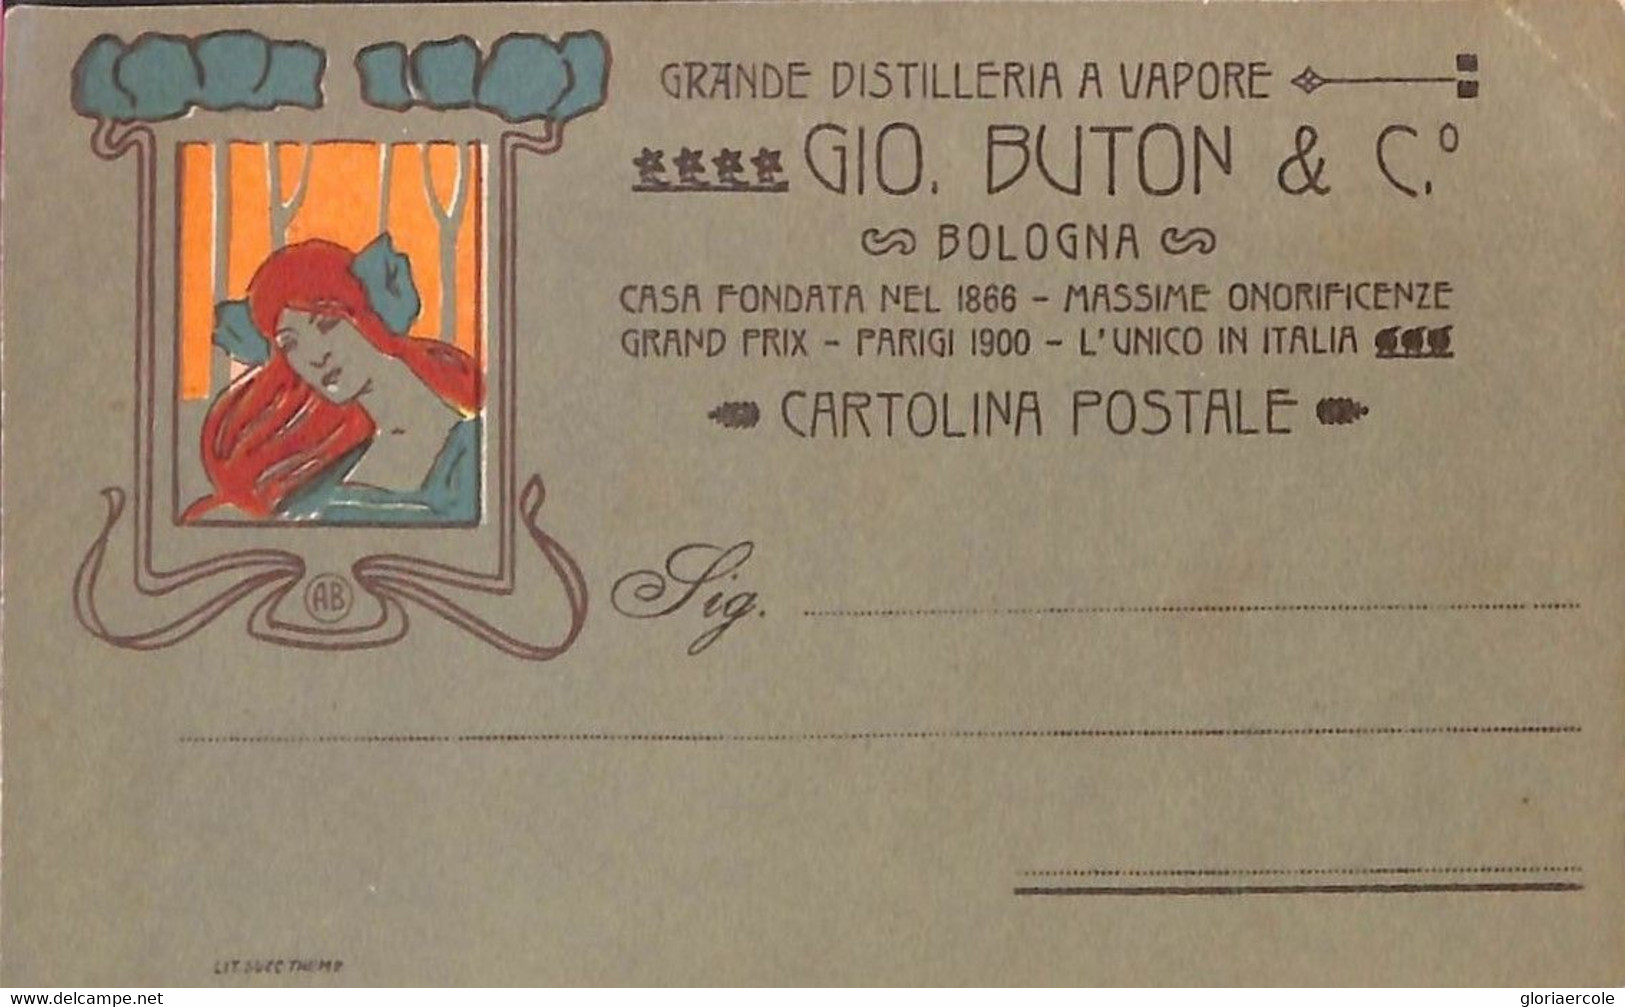 Lib899 - CARTOLINA D'Epoca - PUBBLICITARIA Illustrata ADOLFO BUSI Amaro Buton BOLOGNA -- LIQUEUR - Busi, Adolfo